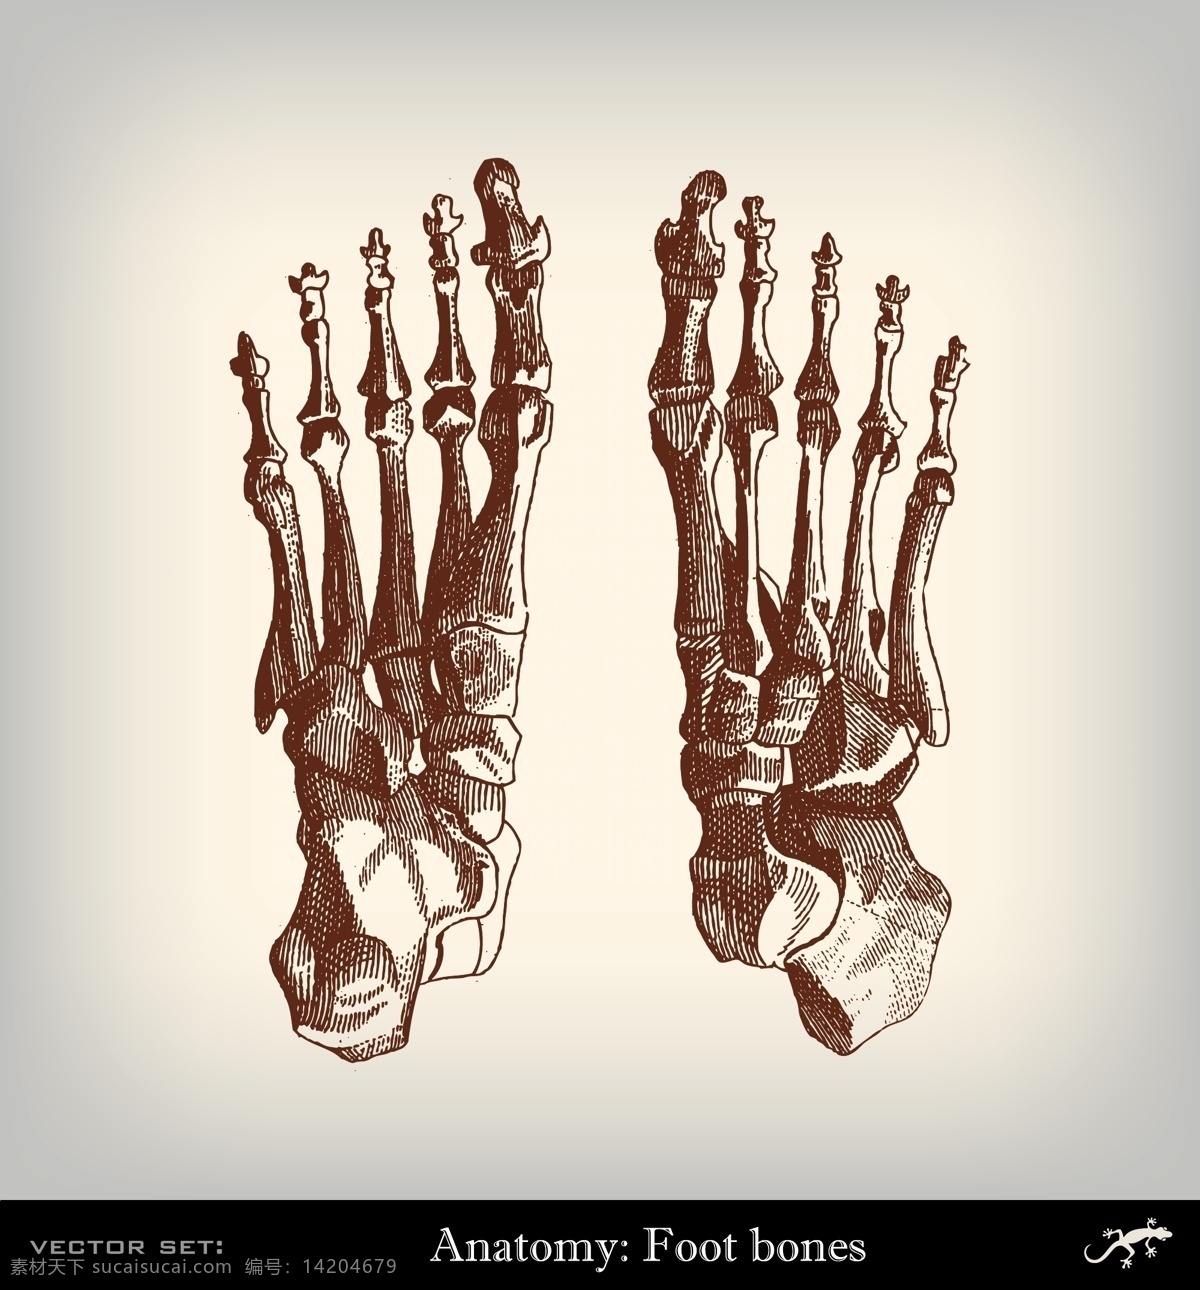 脚掌骨骼结构 脚掌骨骼 关节 人体器官 人体解剖学 医学插画 其他人物 矢量人物 矢量素材 白色